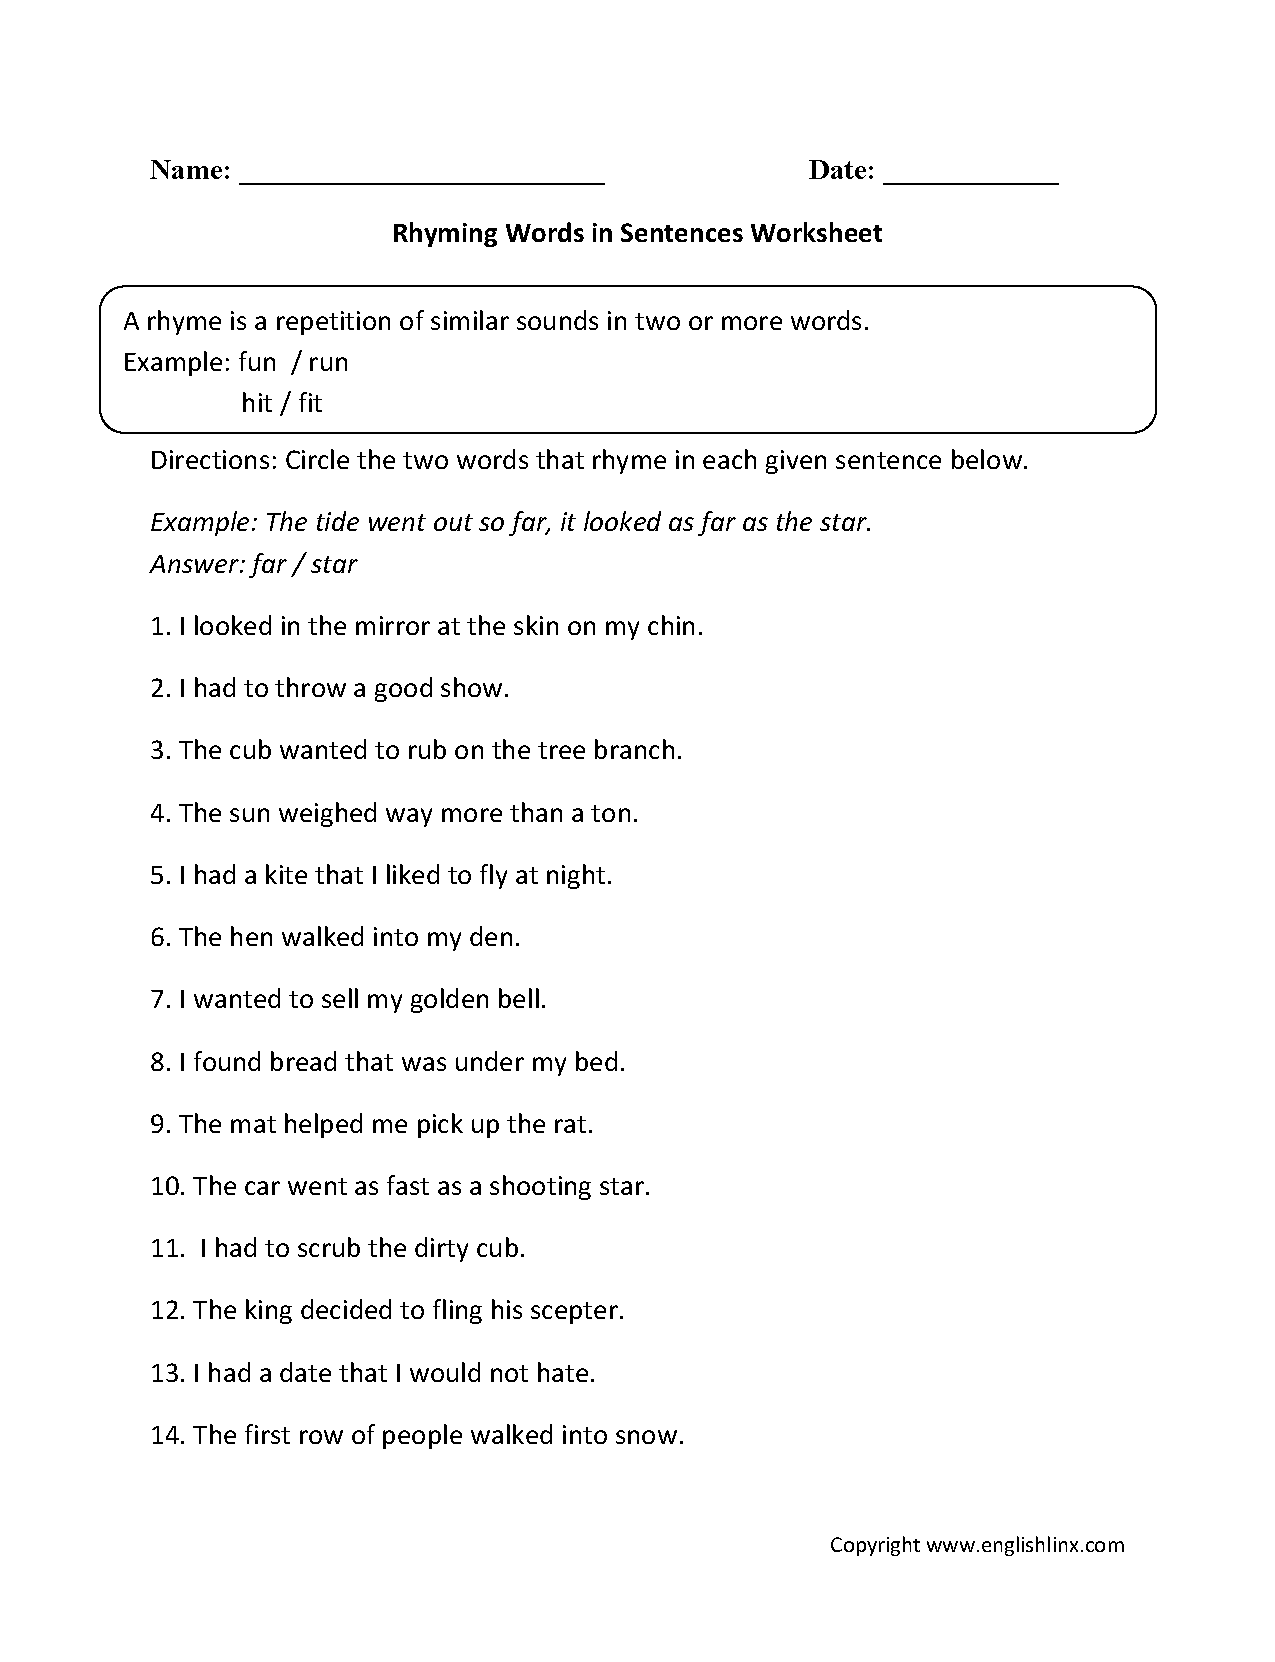 Rhyming Words in Sentences Worksheet